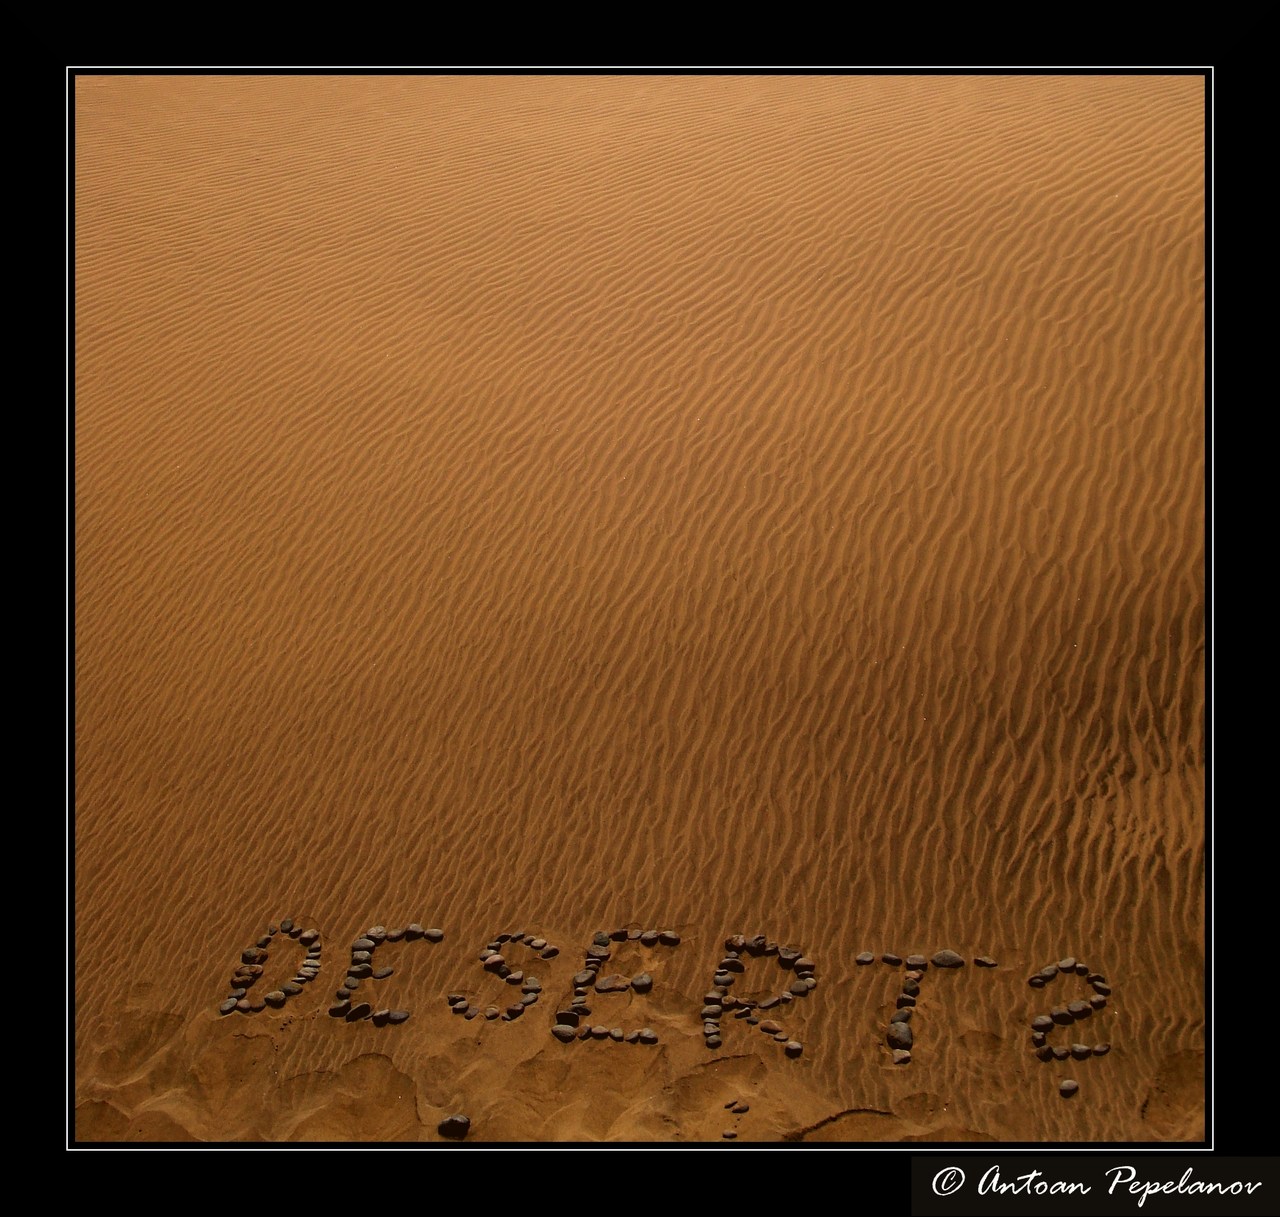 Desert?